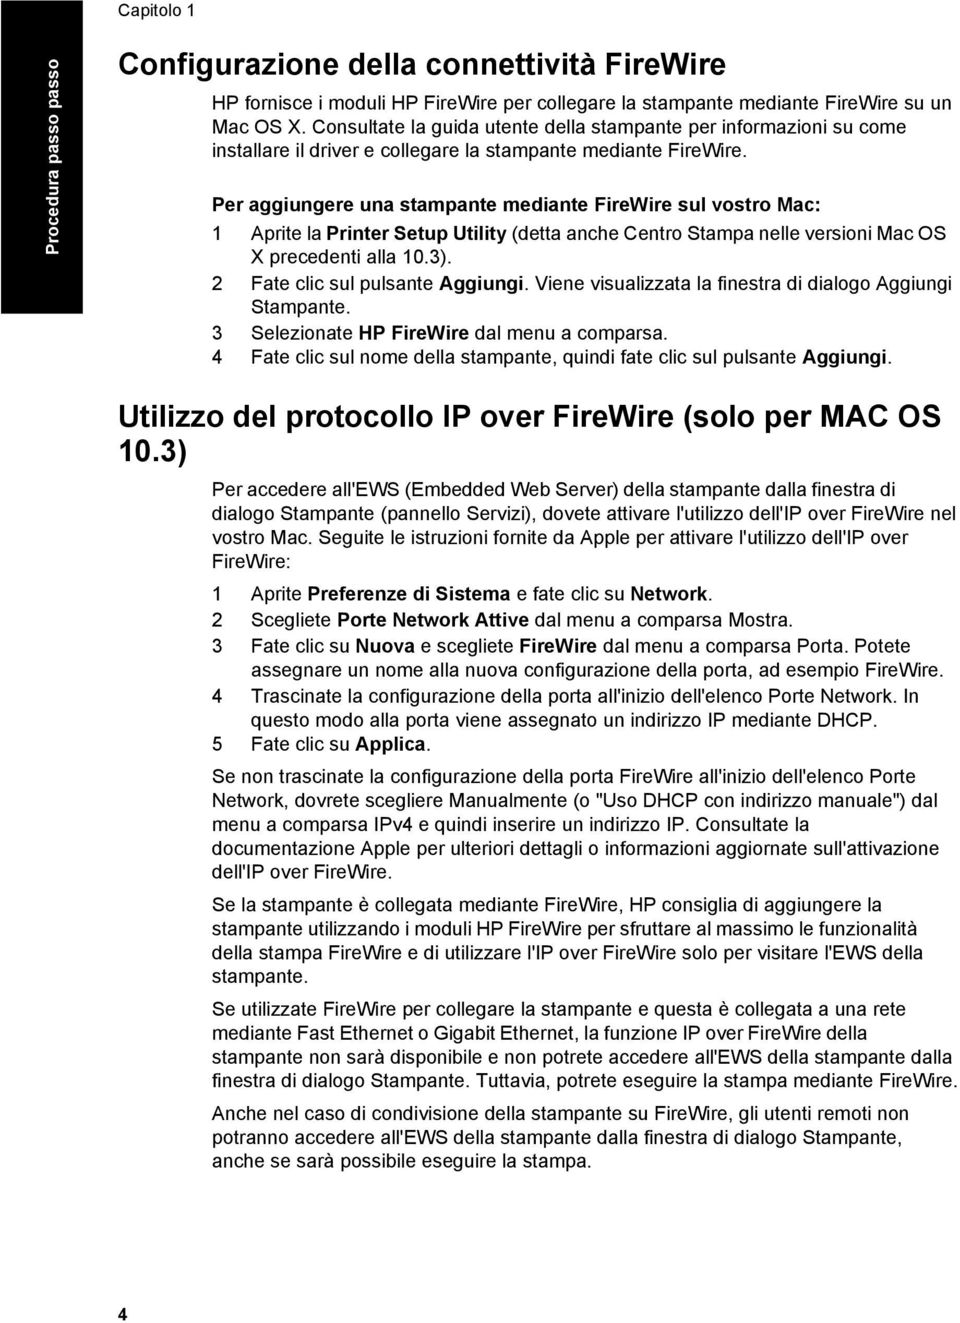 Per aggiungere una stampante mediante FireWire sul vostro Mac: 1 Aprite la Printer Setup Utility (detta anche Centro Stampa nelle versioni Mac OS X precedenti alla 10.3).